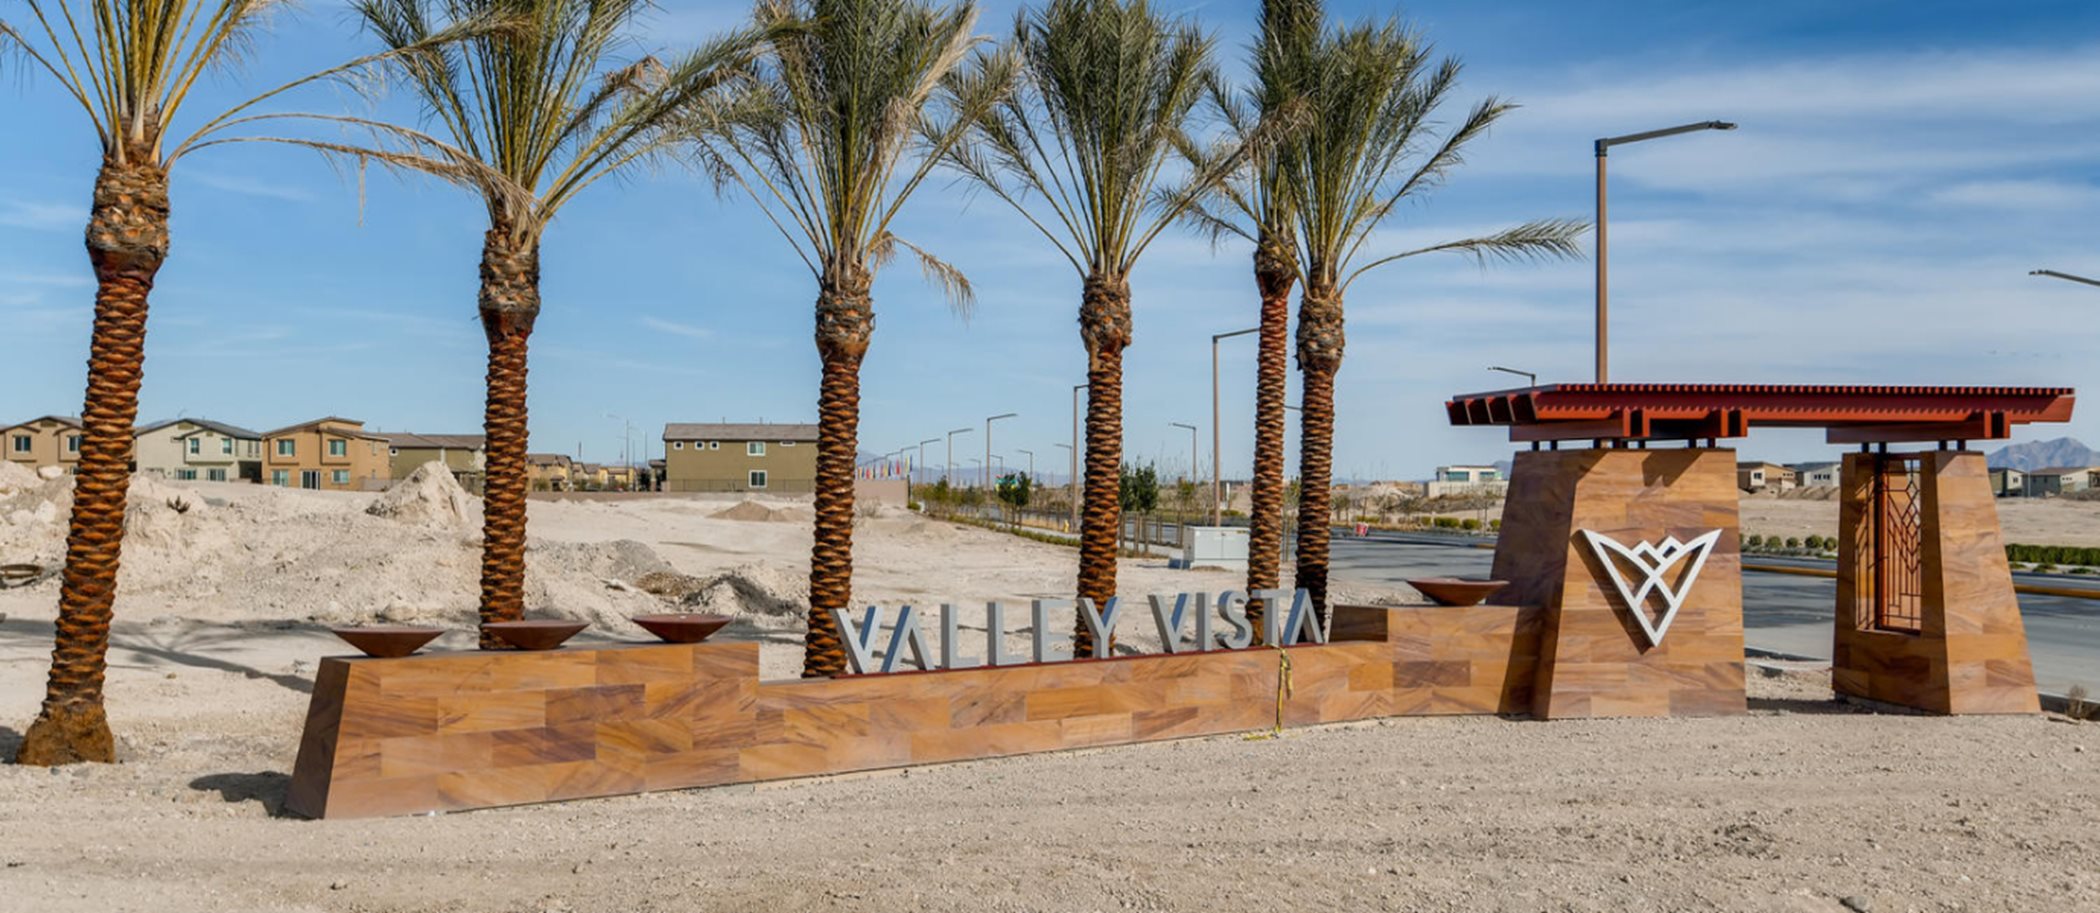 Valley Vista Entrance